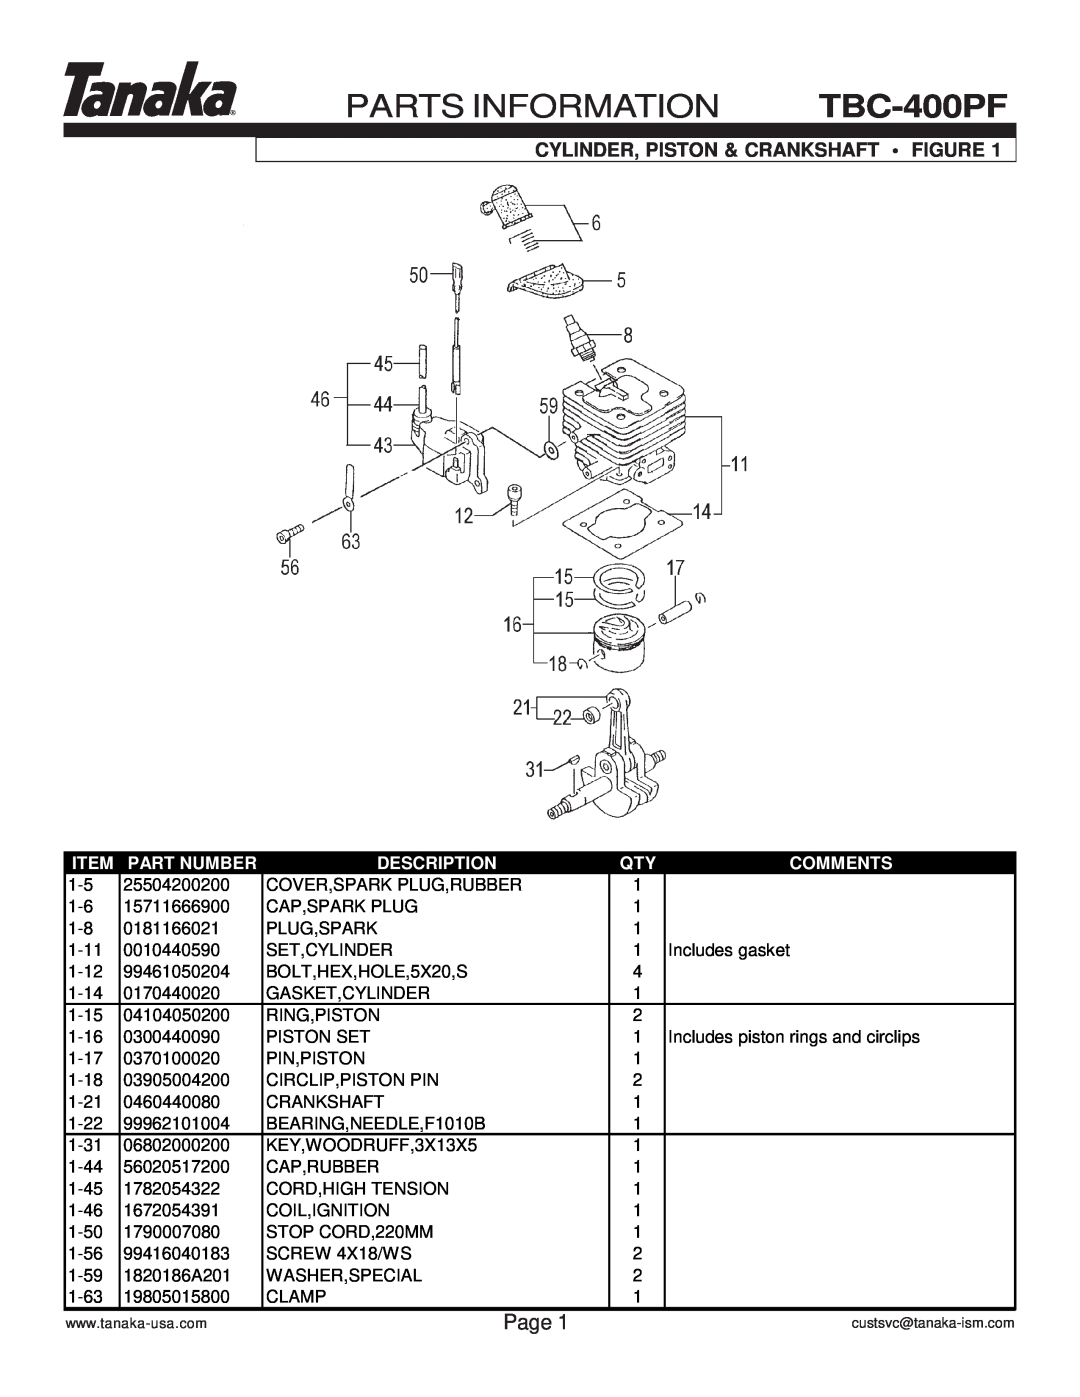 Tanaka PARTS INFORMATION TBC-400PF, Page, Cylinder, Piston & Crankshaft Figure, Part Number, Description, Comments 